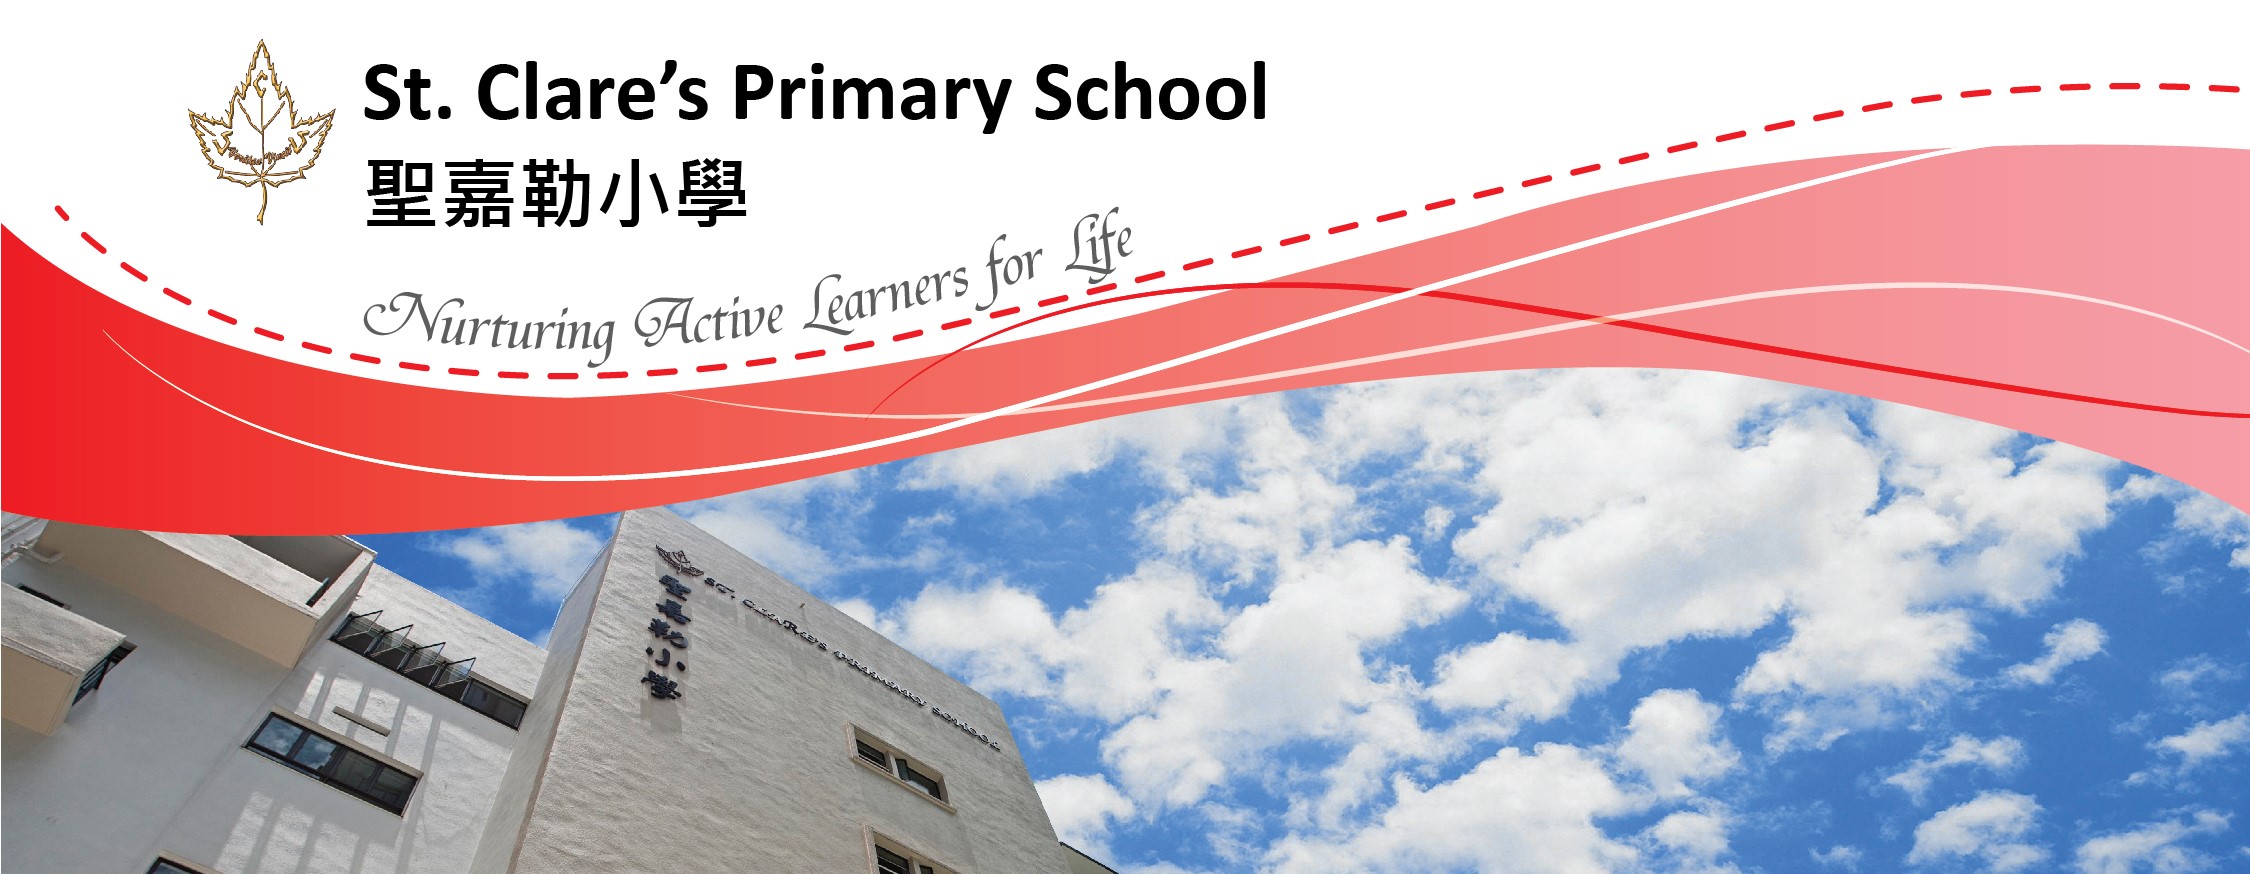 St. Clare's Primary School